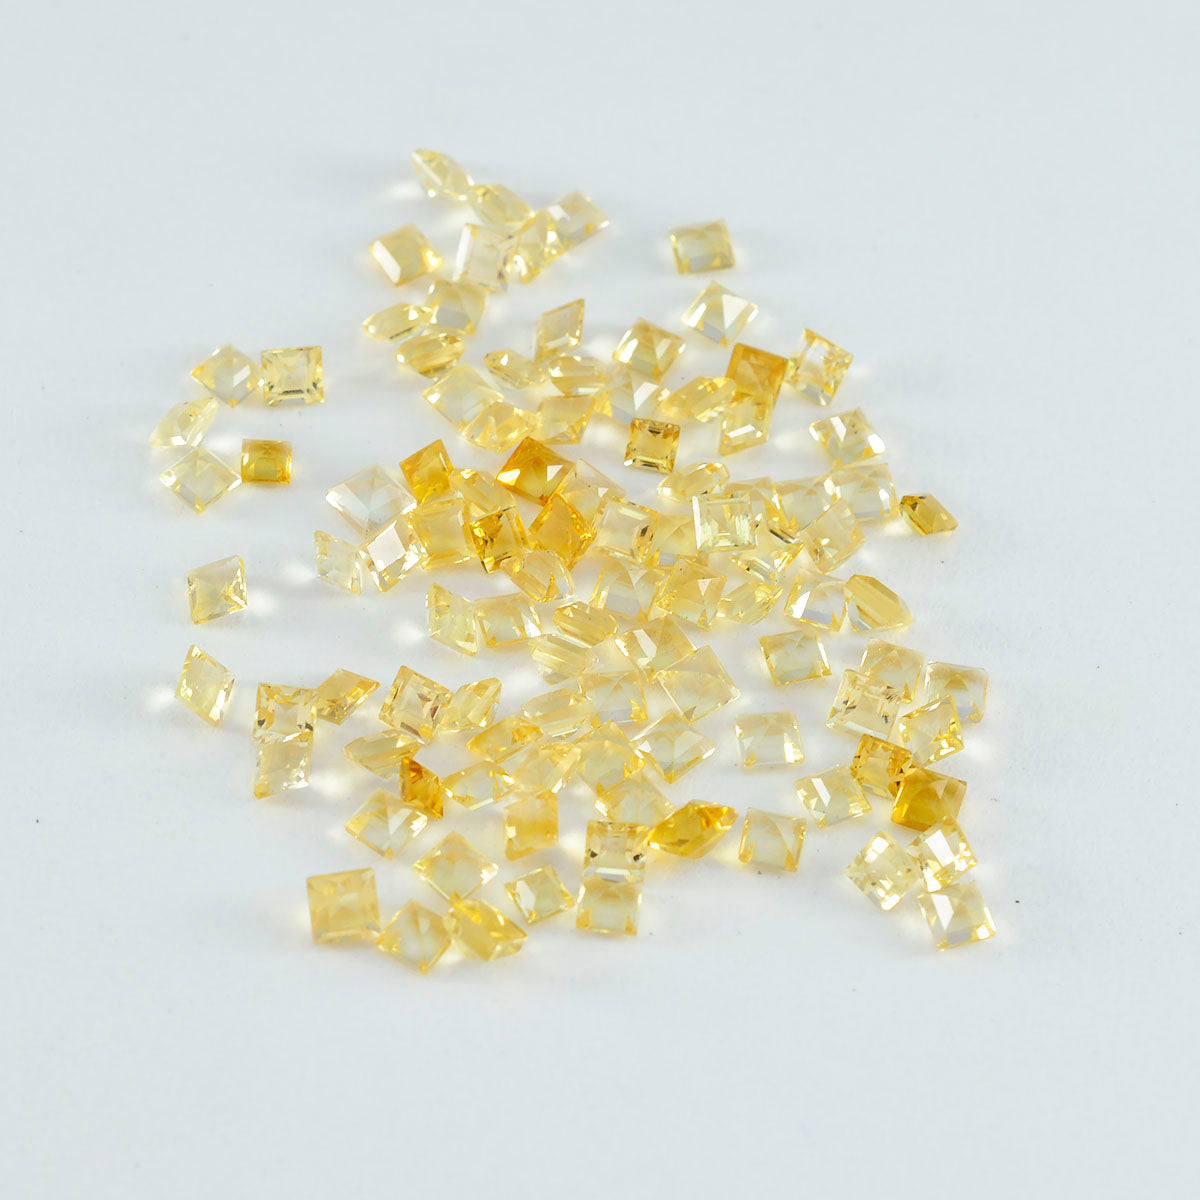 riyogems 1шт настоящий желтый цитрин ограненный 4x4 мм квадратной формы драгоценные камни хорошего качества